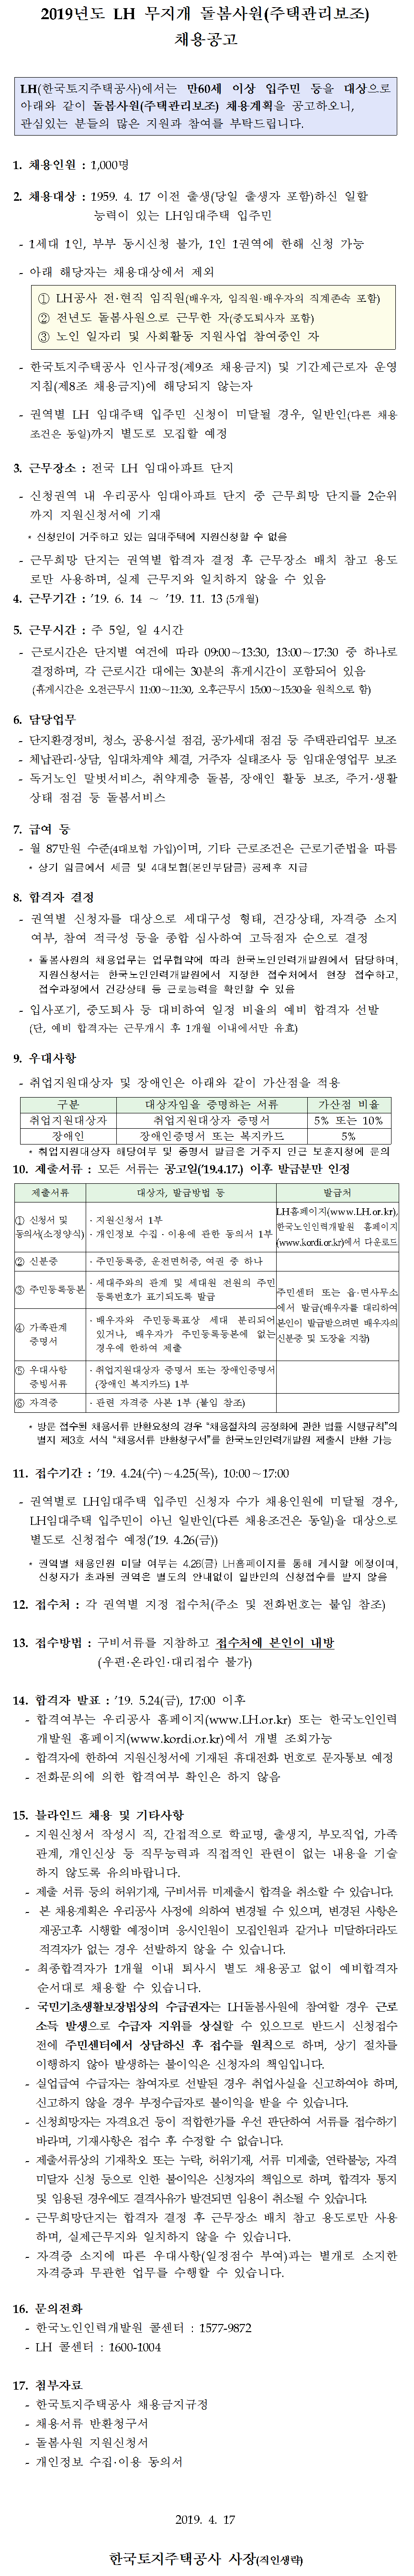 2019년도 LH 무지개 돌봄사원(주택관리보조) 채용공고